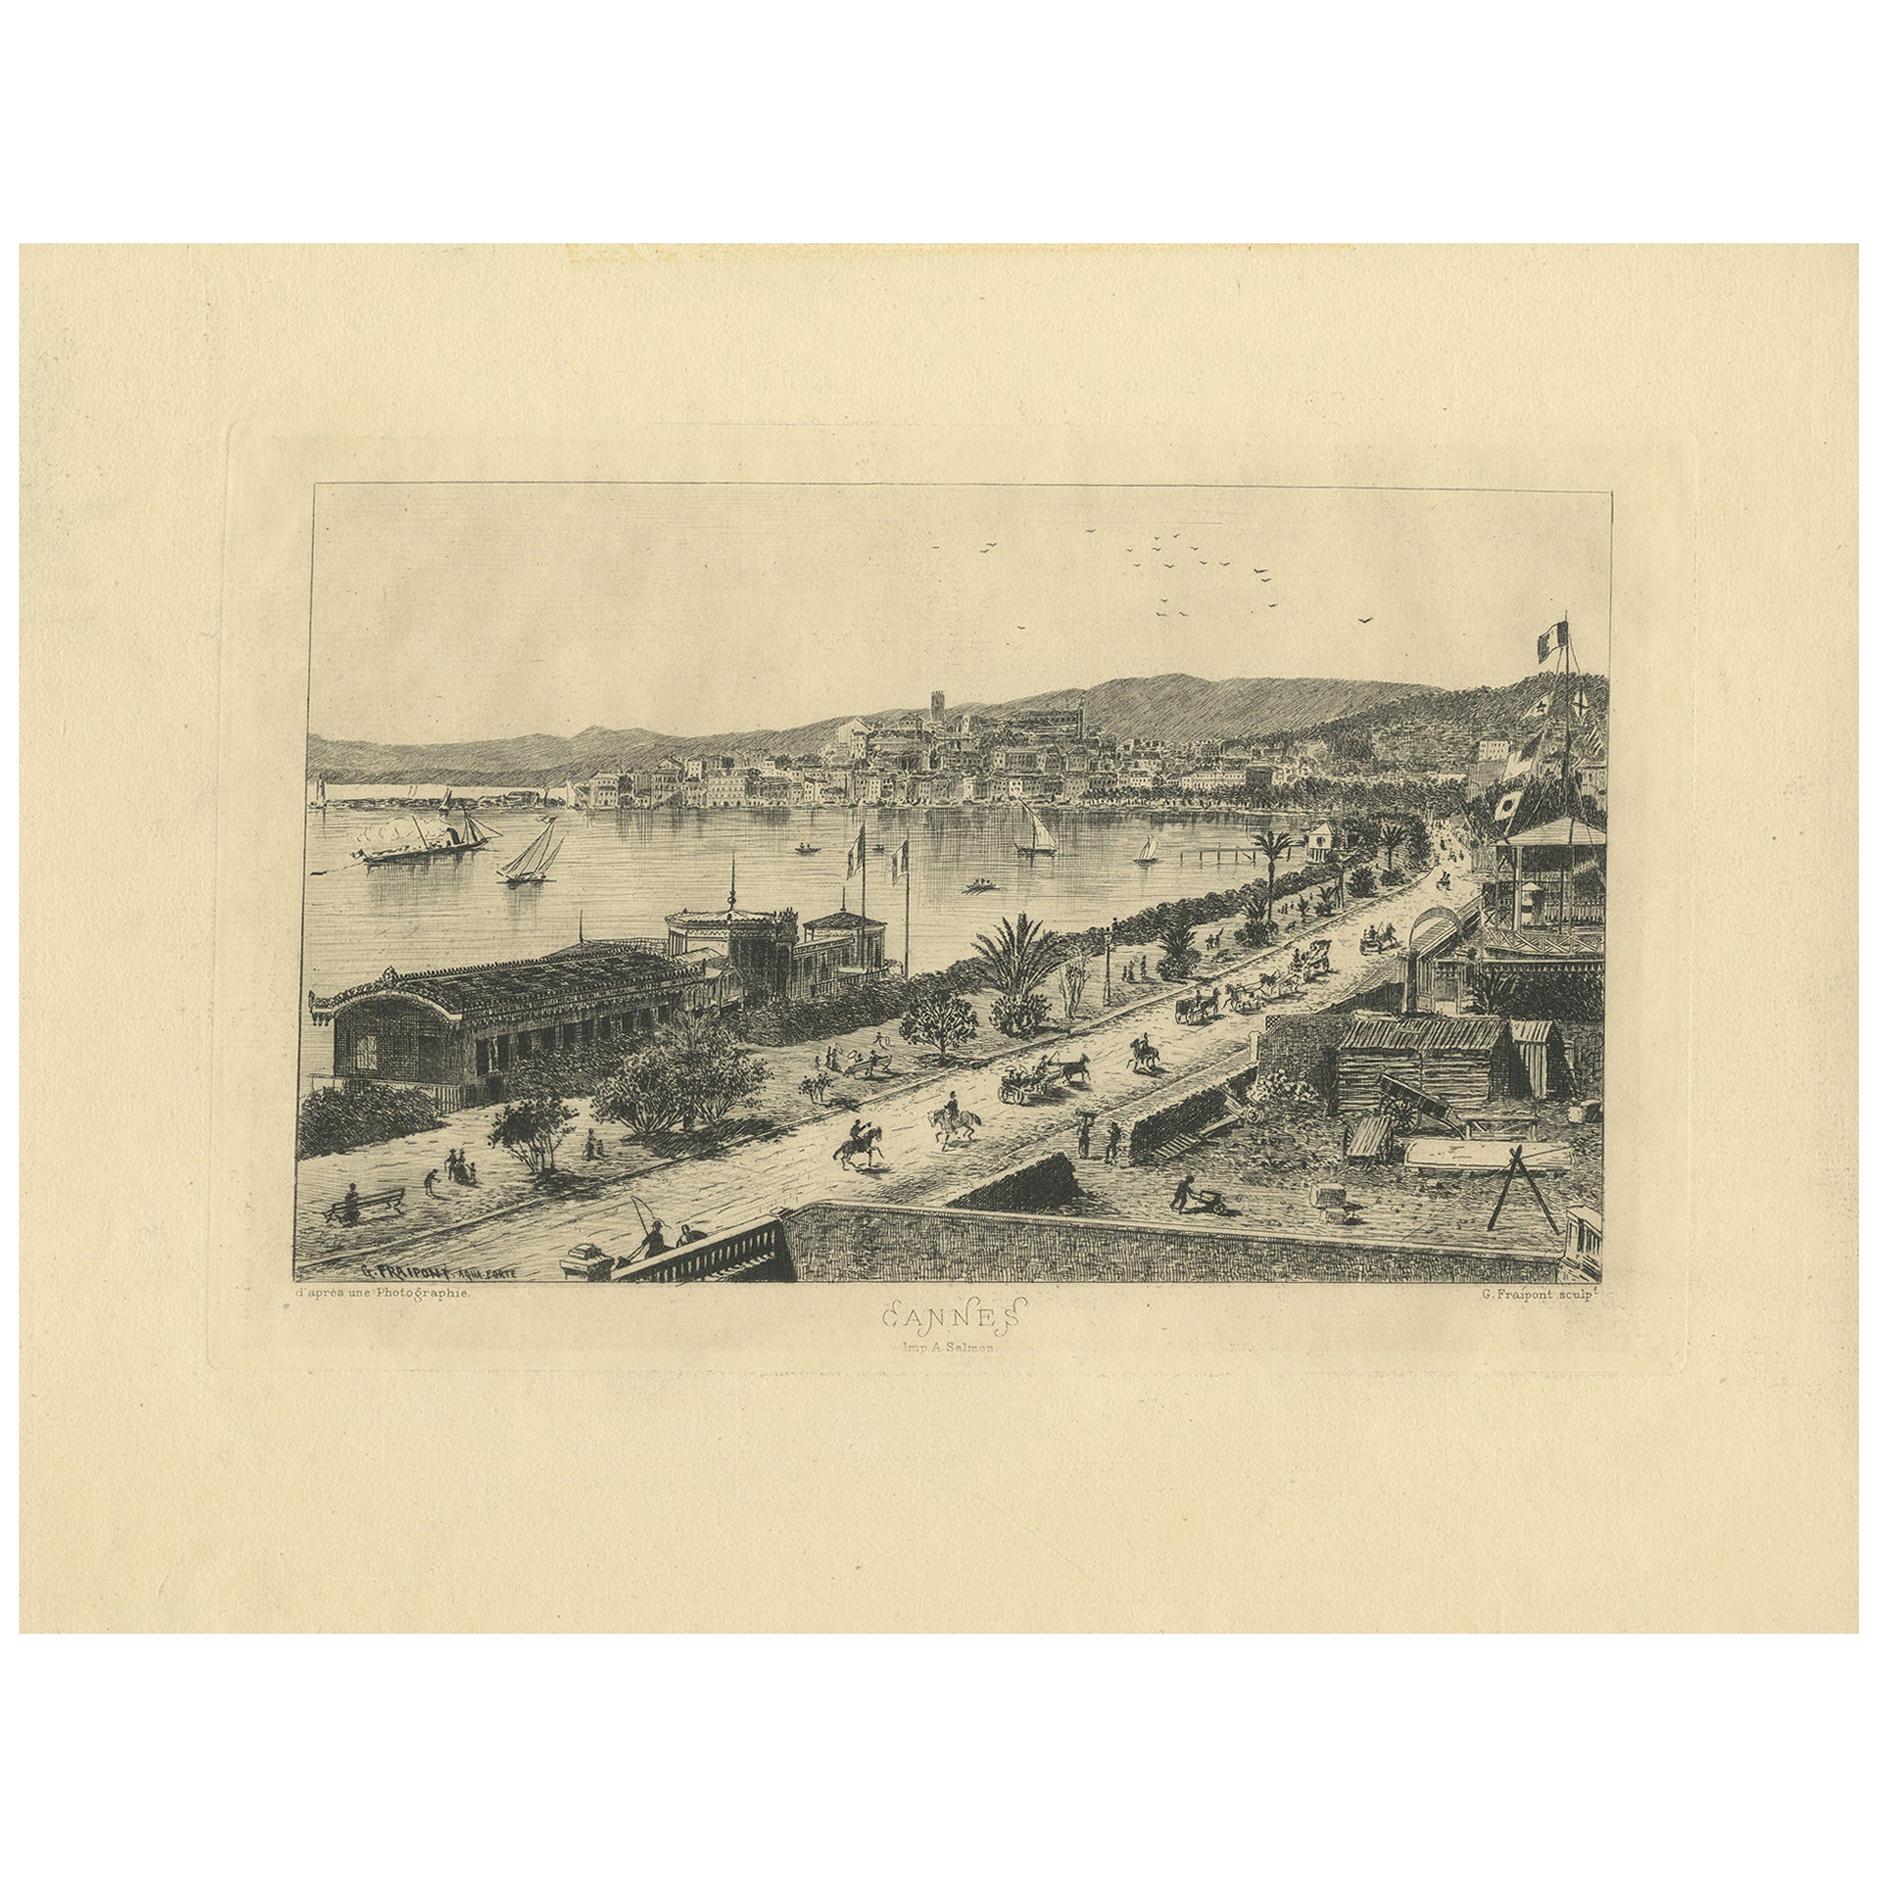 Impression ancienne de la ville de Cannes par Fraipont, datant d'environ 1900